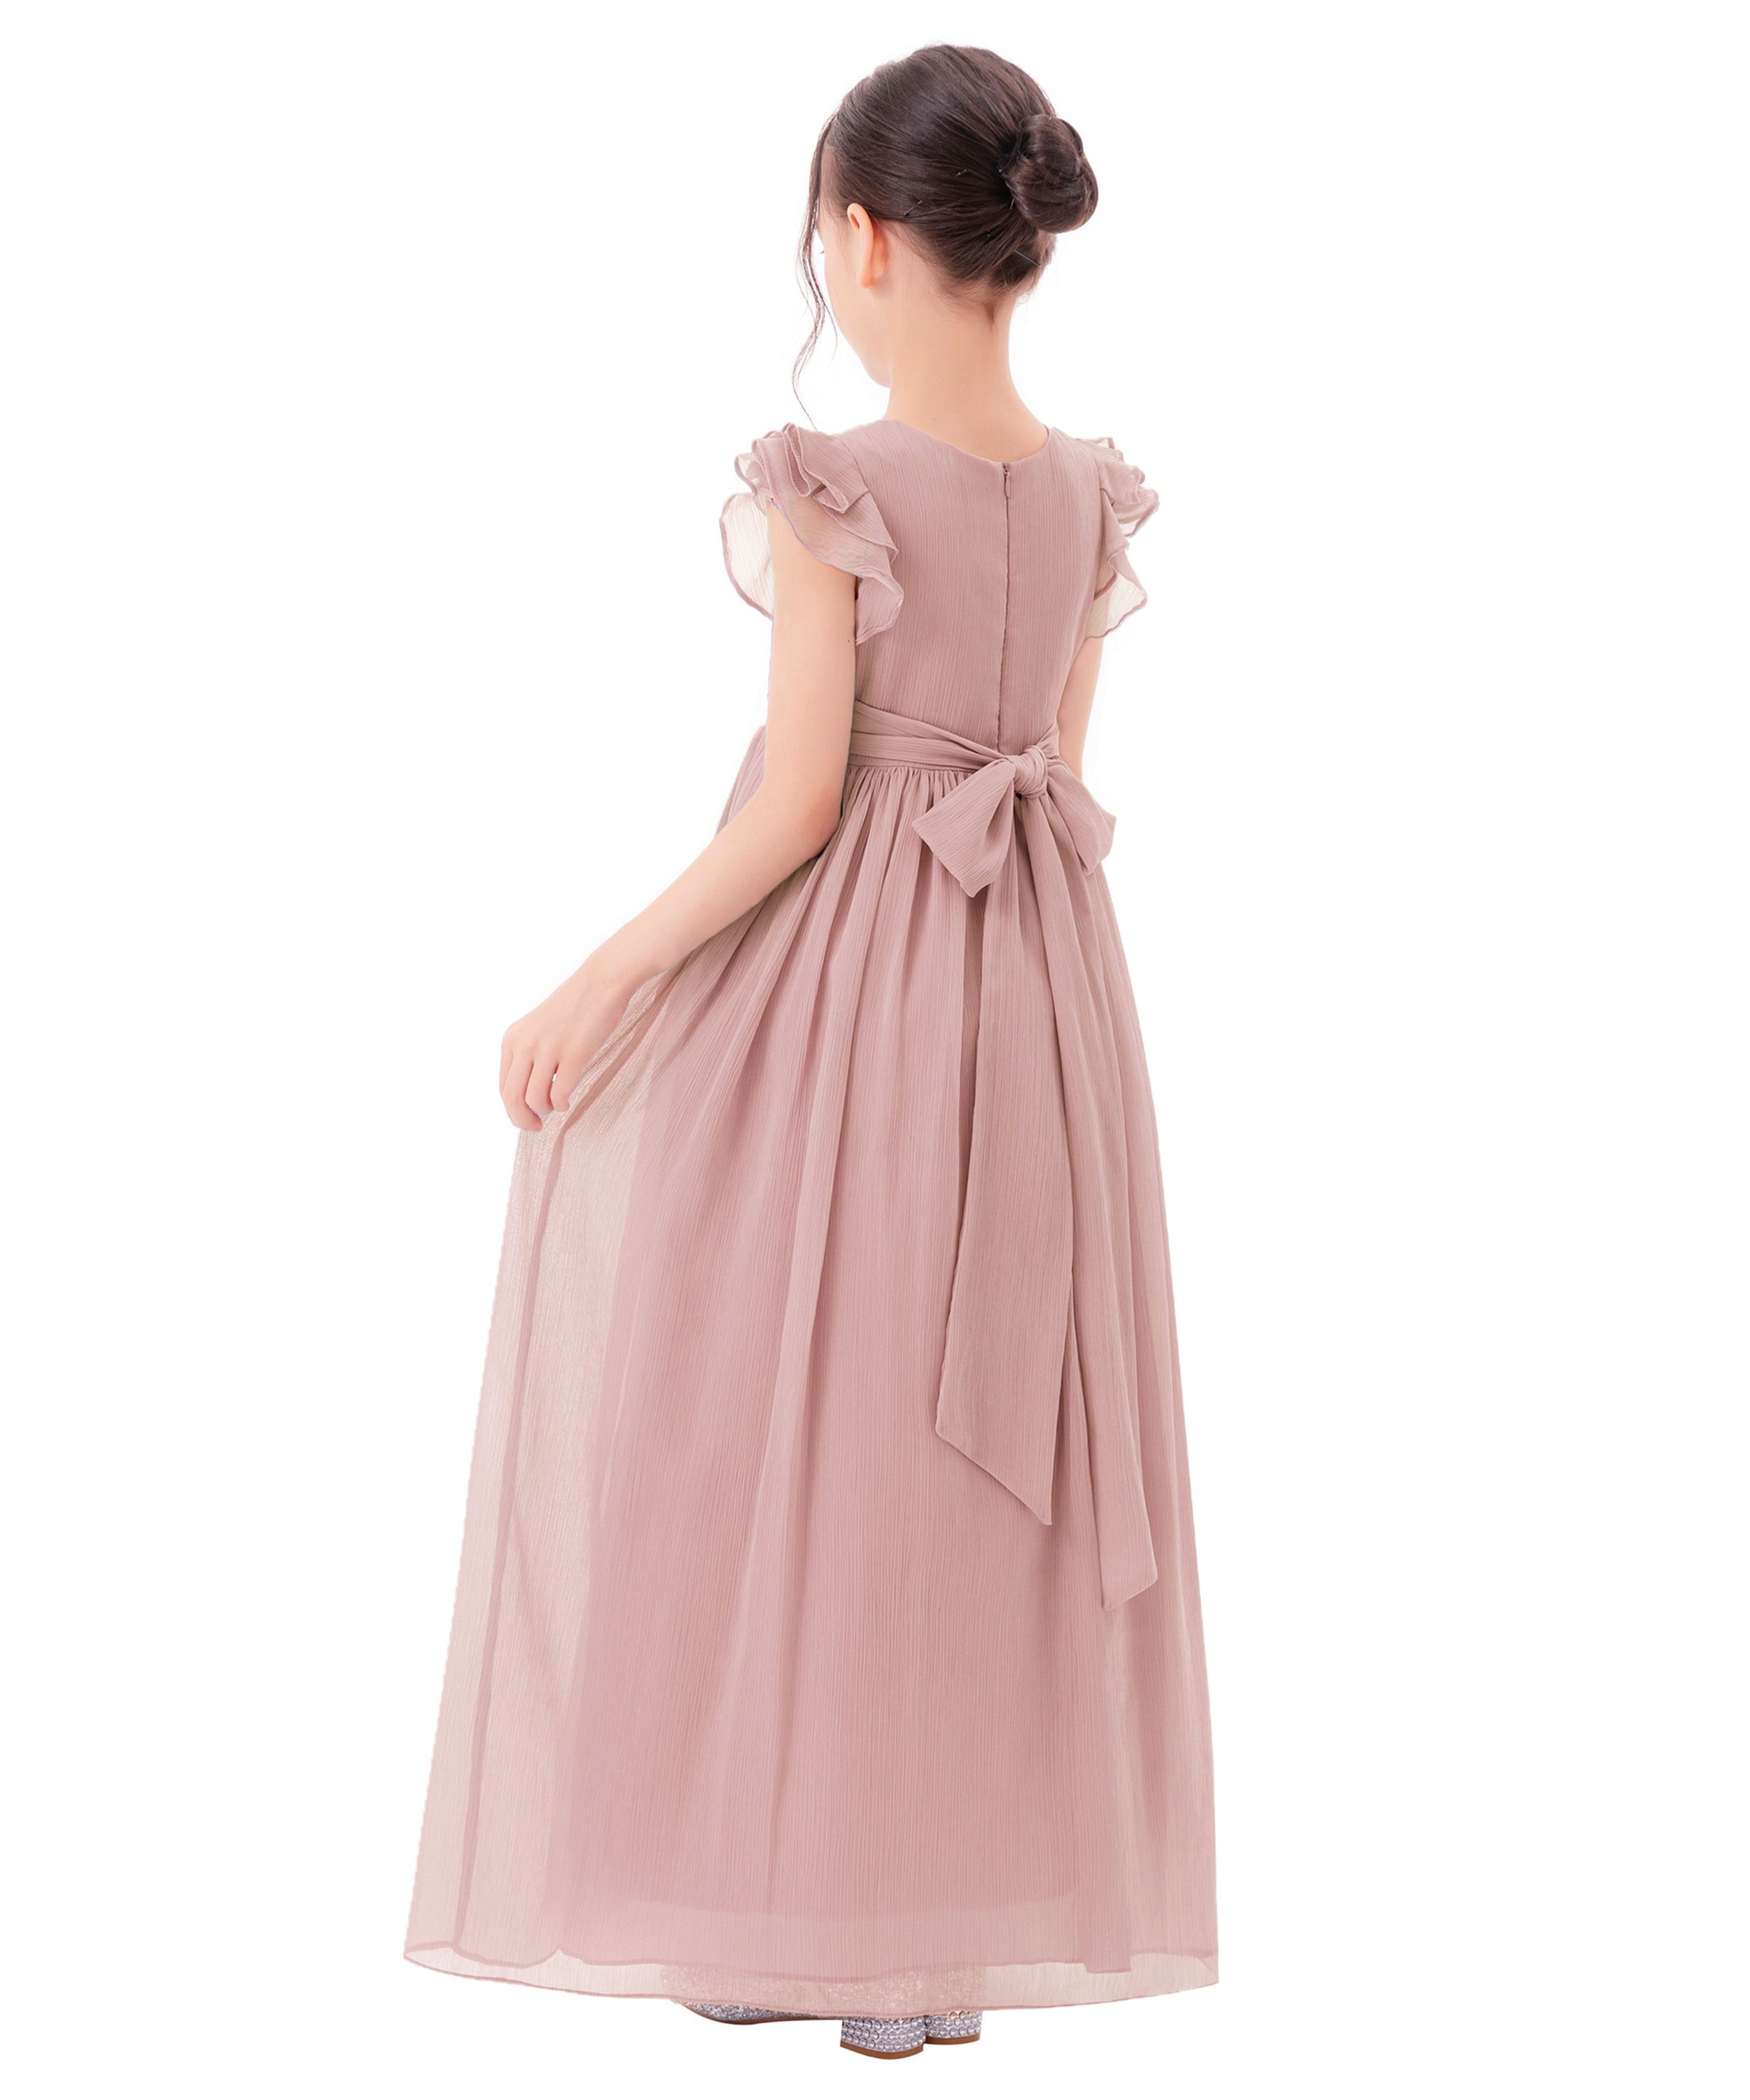 Blush Pink Chiffon Flower Girl Dress Ruffle Chiffon 822